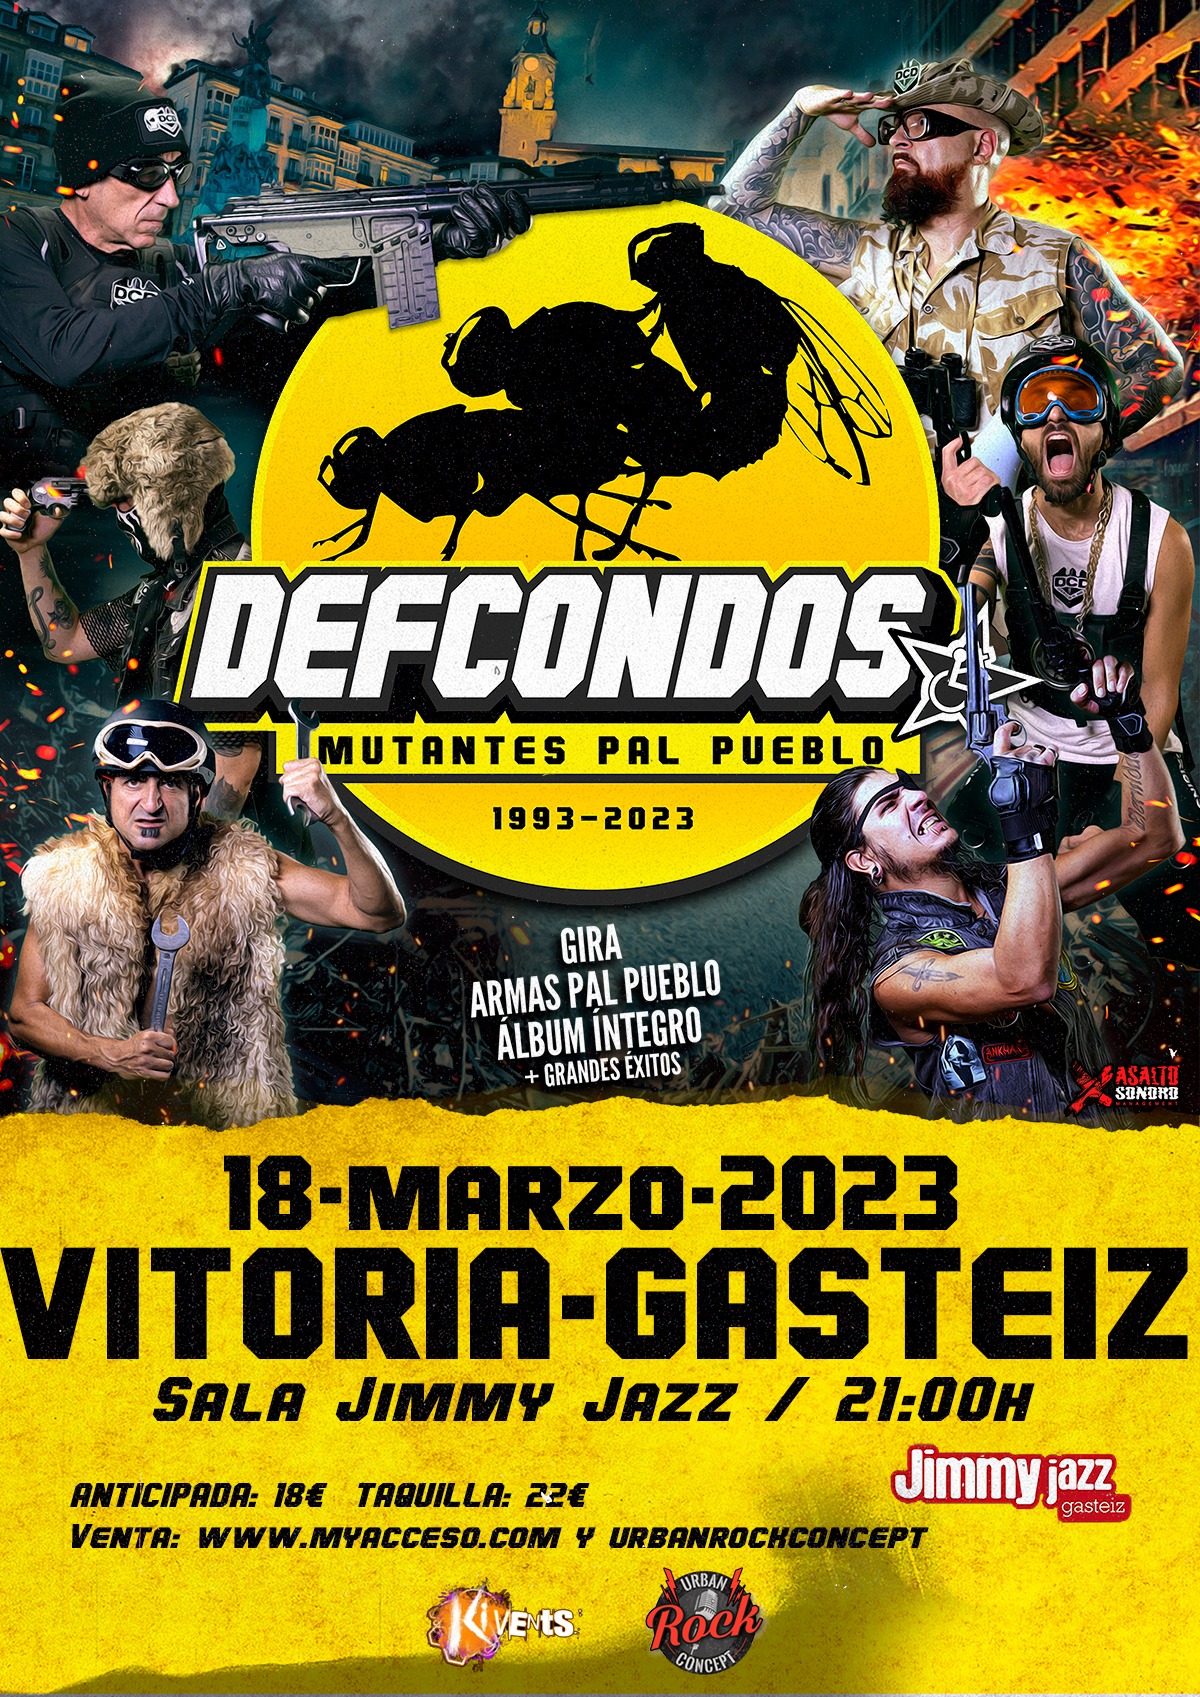 Def Con Dos estarán actuando el 18 de marzo en Vitoria